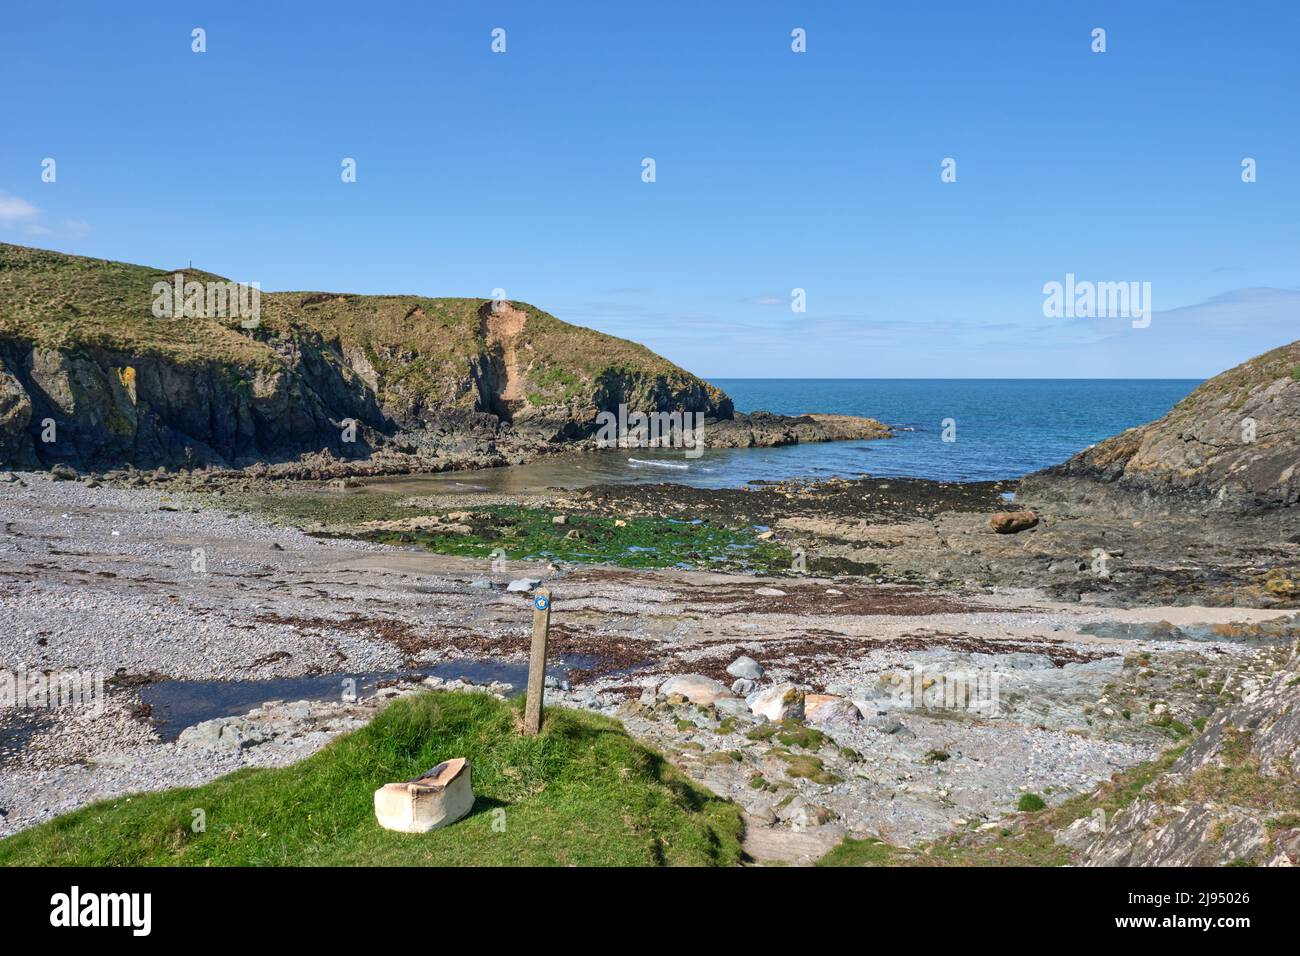 Il Wales Coast Path segue la costa frastagliata della penisola settentrionale di Llyn attraverso una baia rocciosa Foto Stock